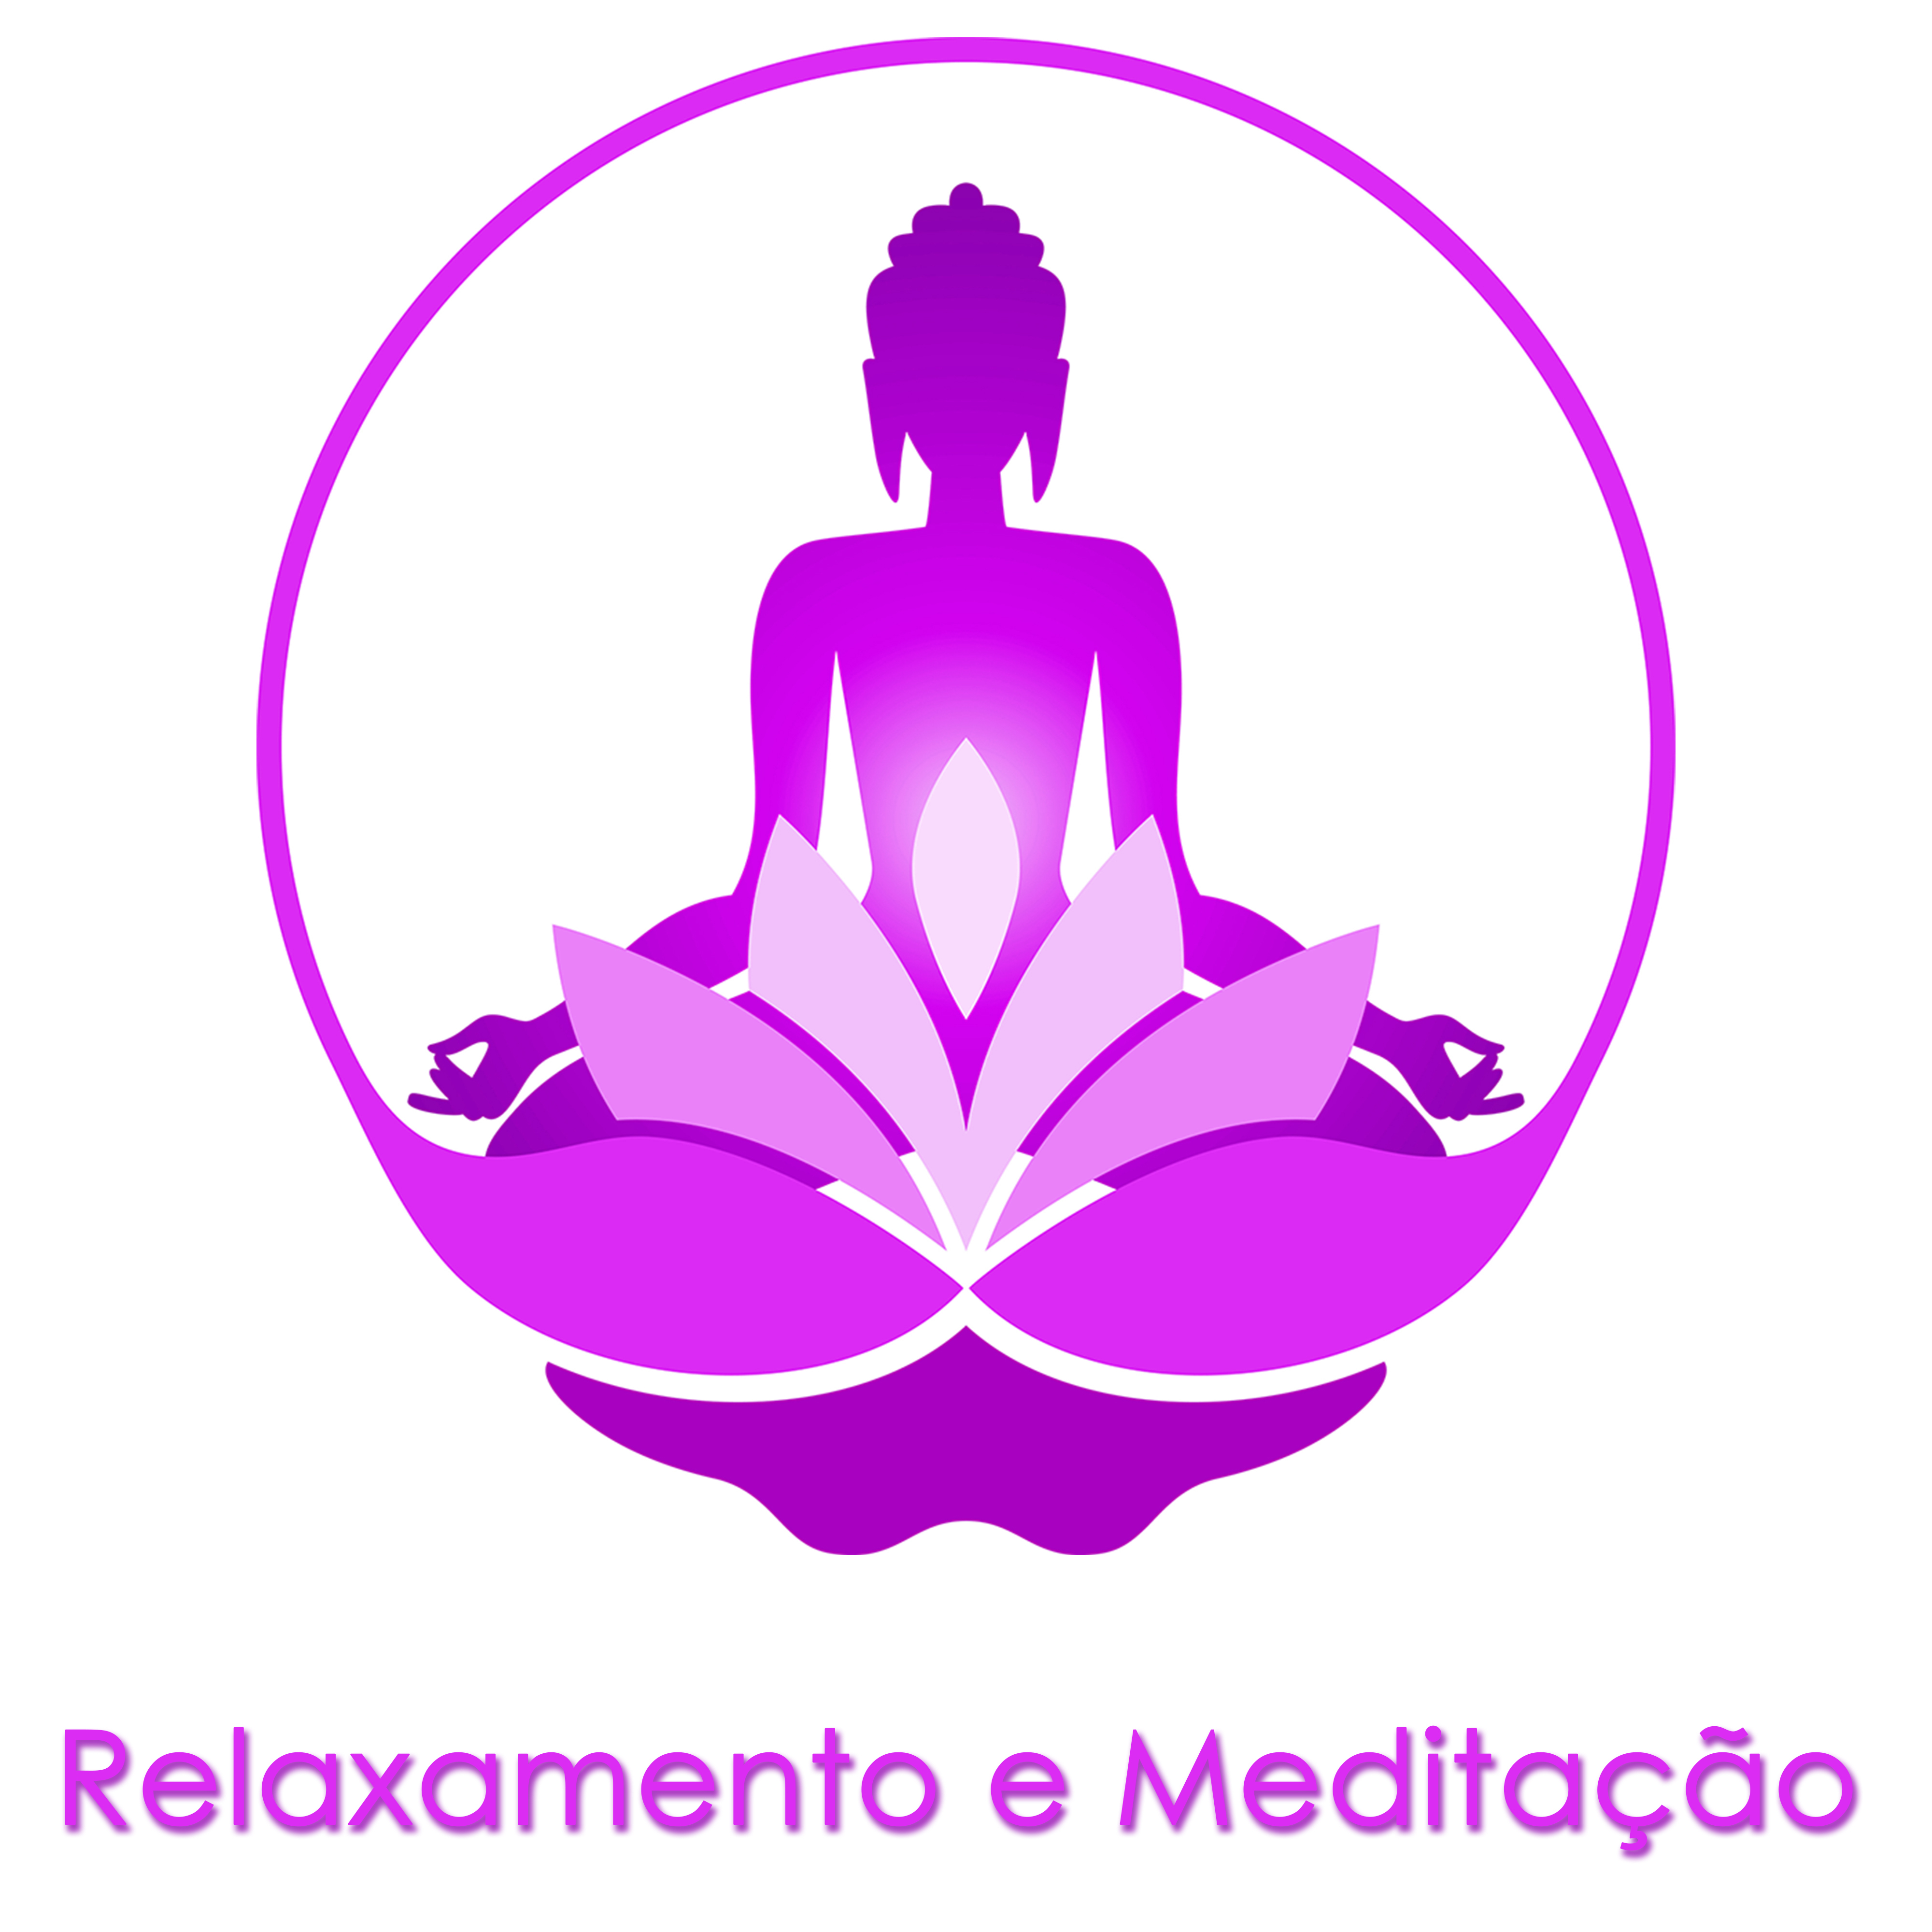 Relaxamento e Meditação - Espiritualidade New Age para Yoga e Relaxar a Mente, Músicas Lentas para Sono, Pensamento Positivo, Bem Estar e Serenidade